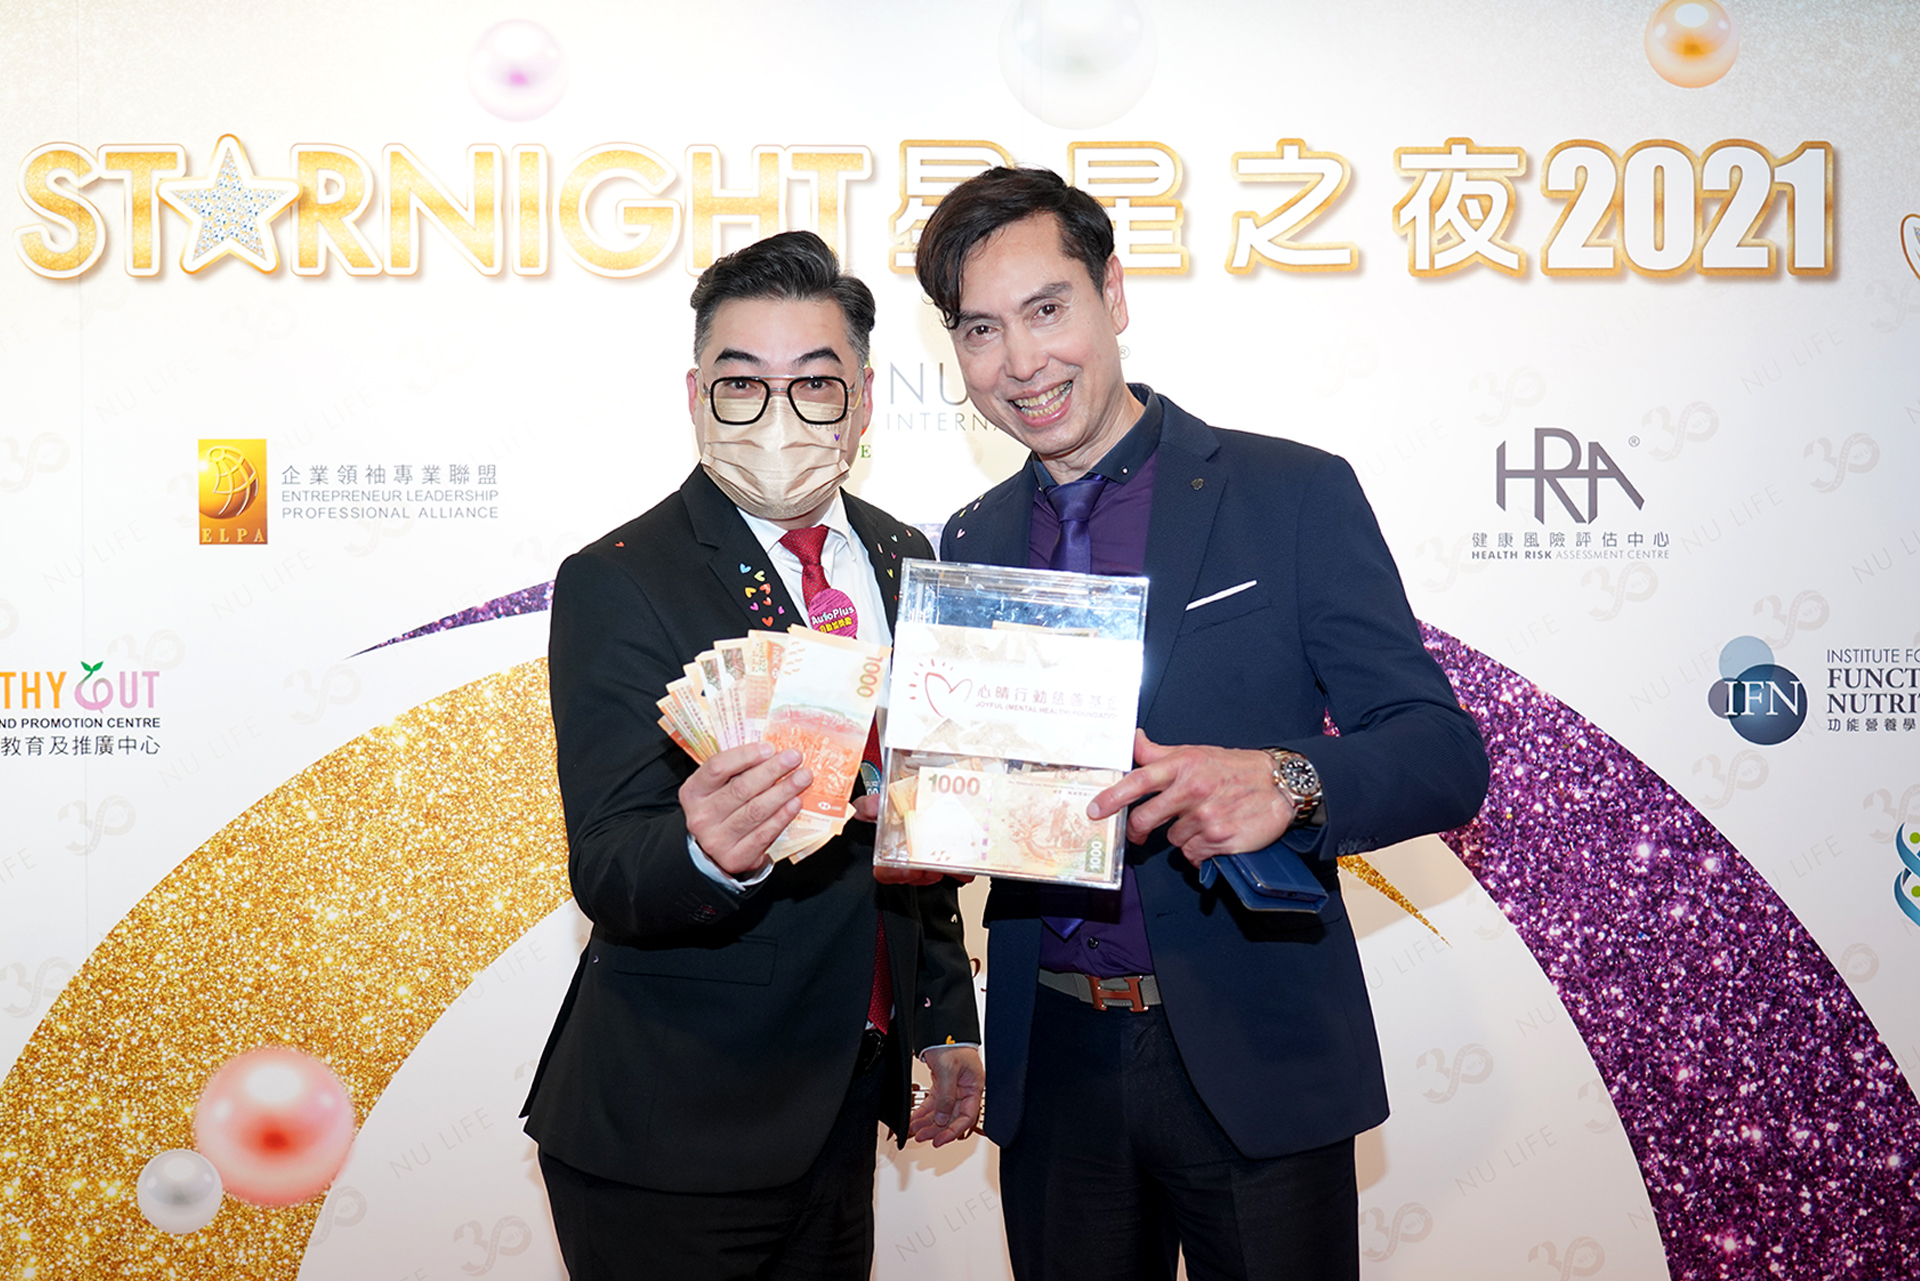 恭賀盧德輝先生從星級百萬富翁遊戲贏取HK$10,000獎金並與公司合共捐助HK$4000予「心晴行動慈善基金」